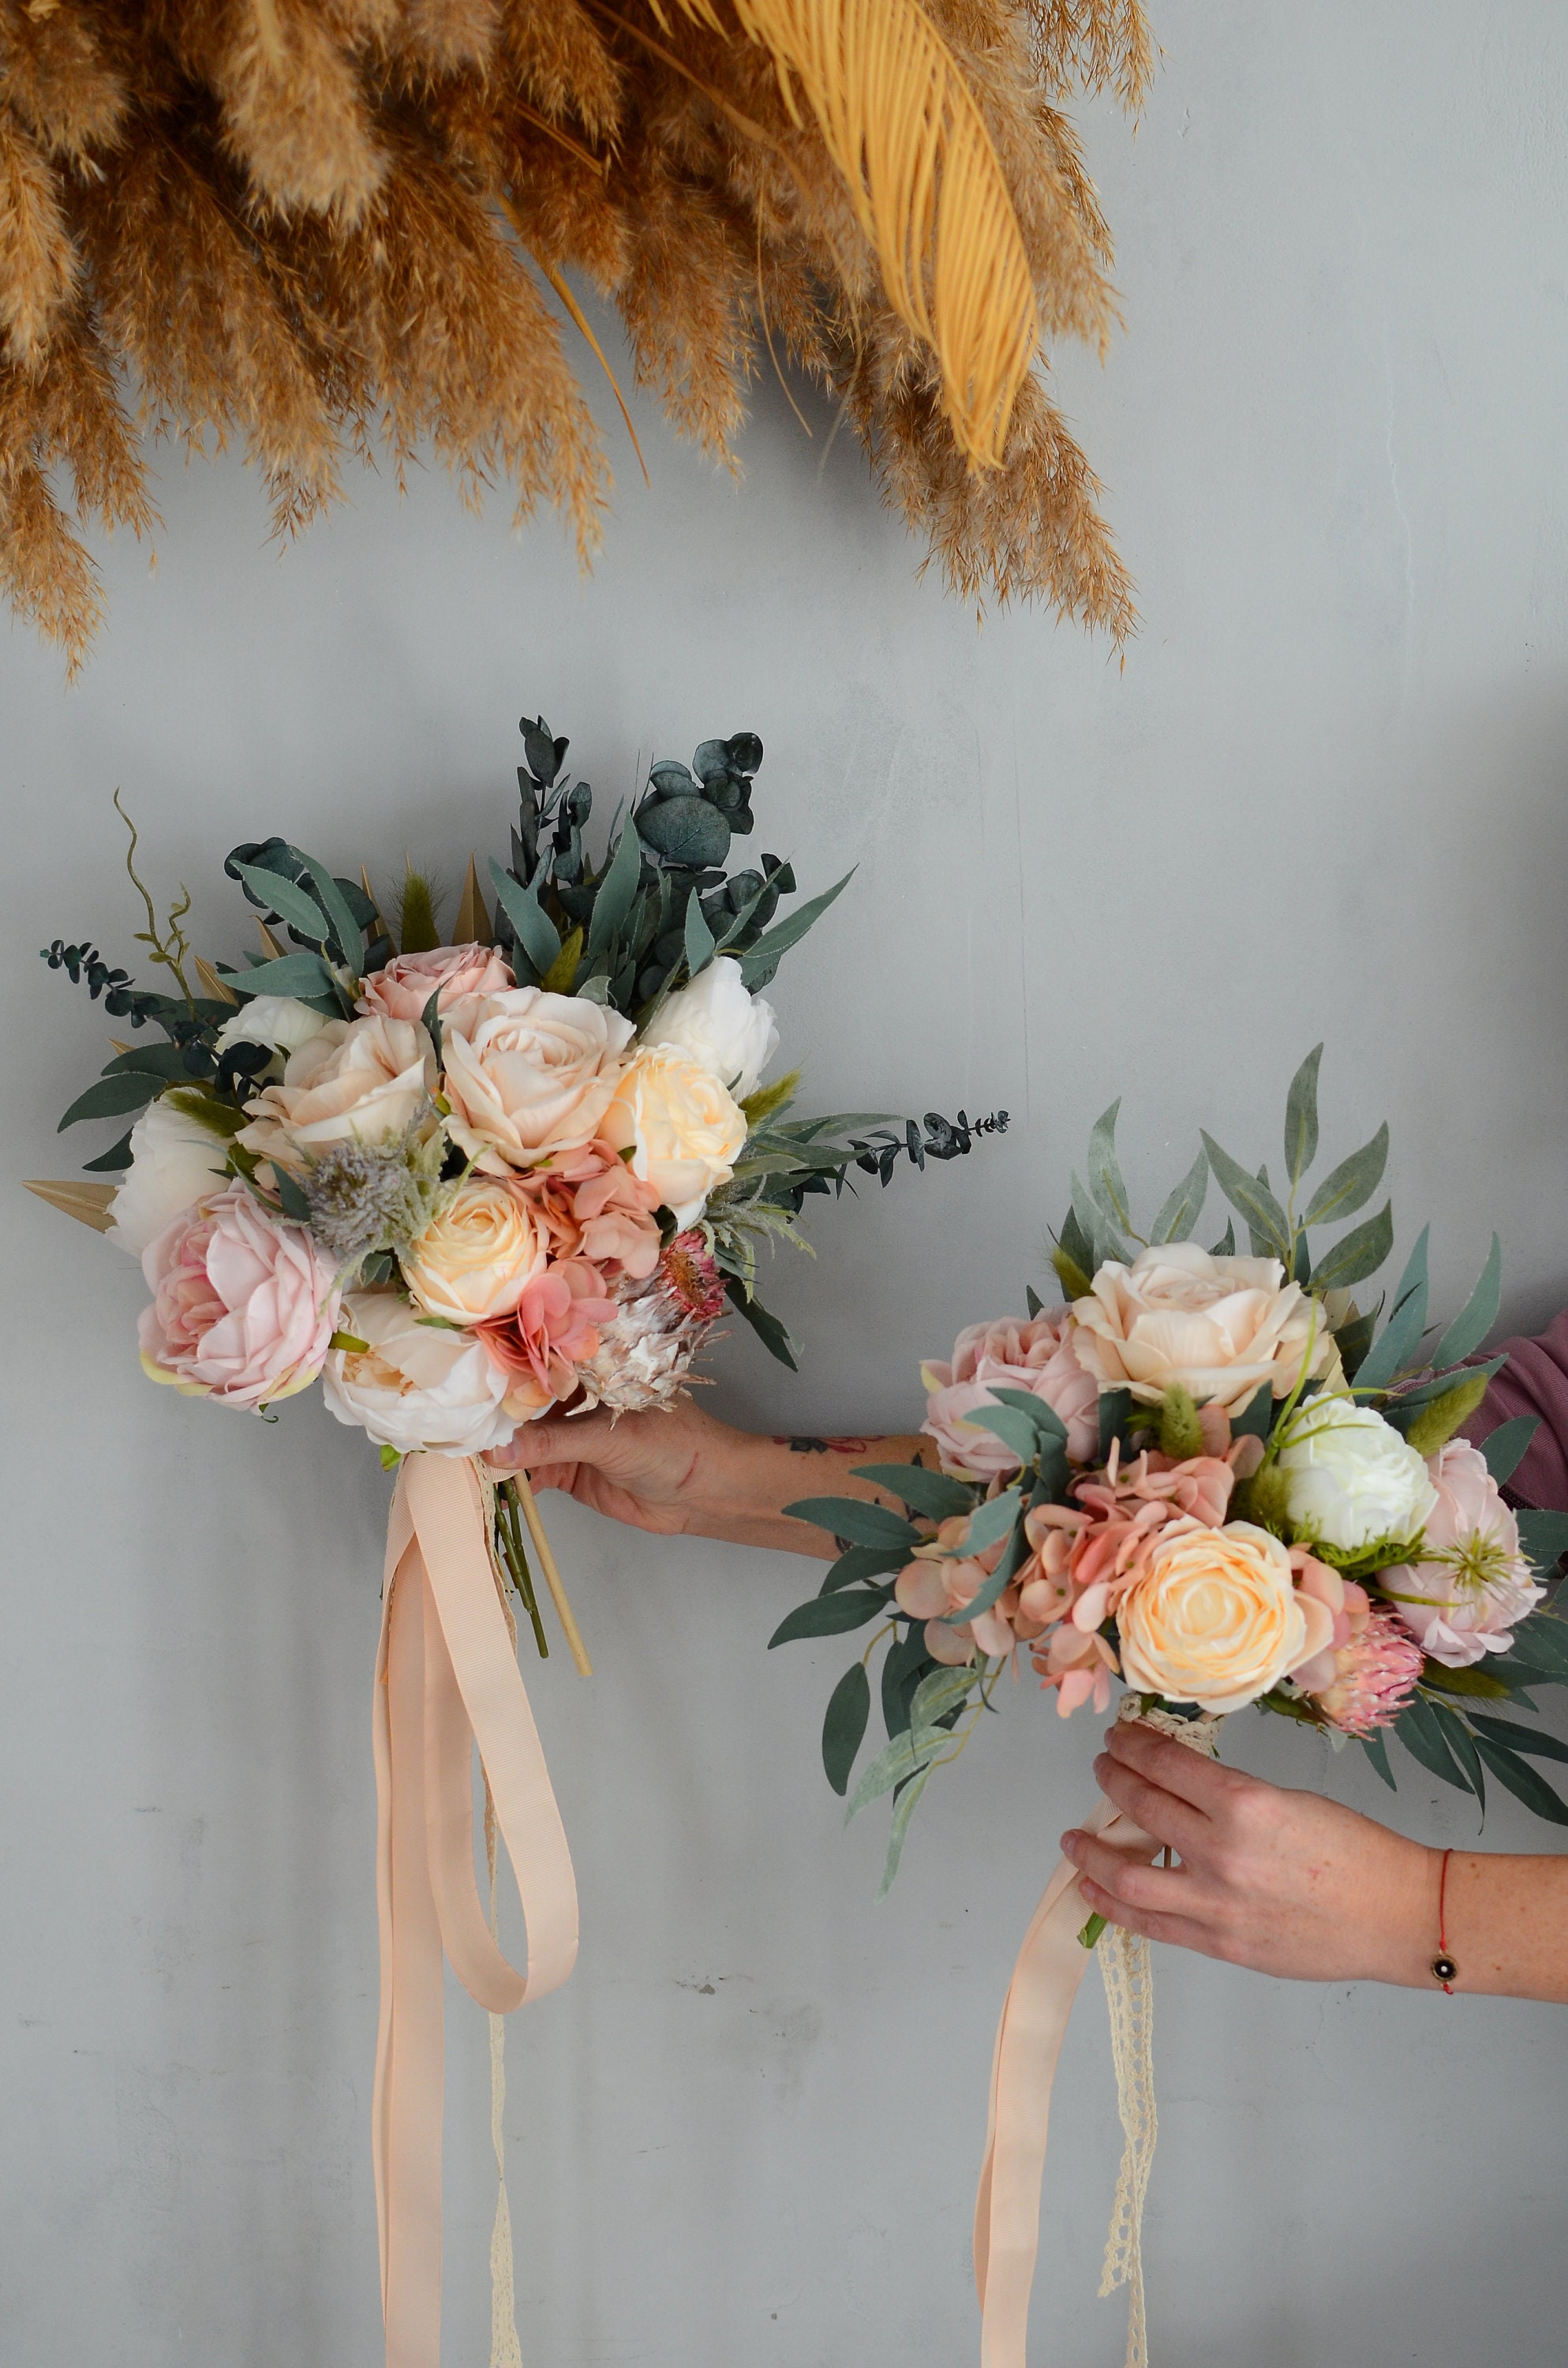 Mini Dry Flower Bouquet,natural Plants Bouquet,dried Flower  Bouquet,boutonniere,home Decor,bridal Bouquet Wedding Decor,wall Decor,gift  